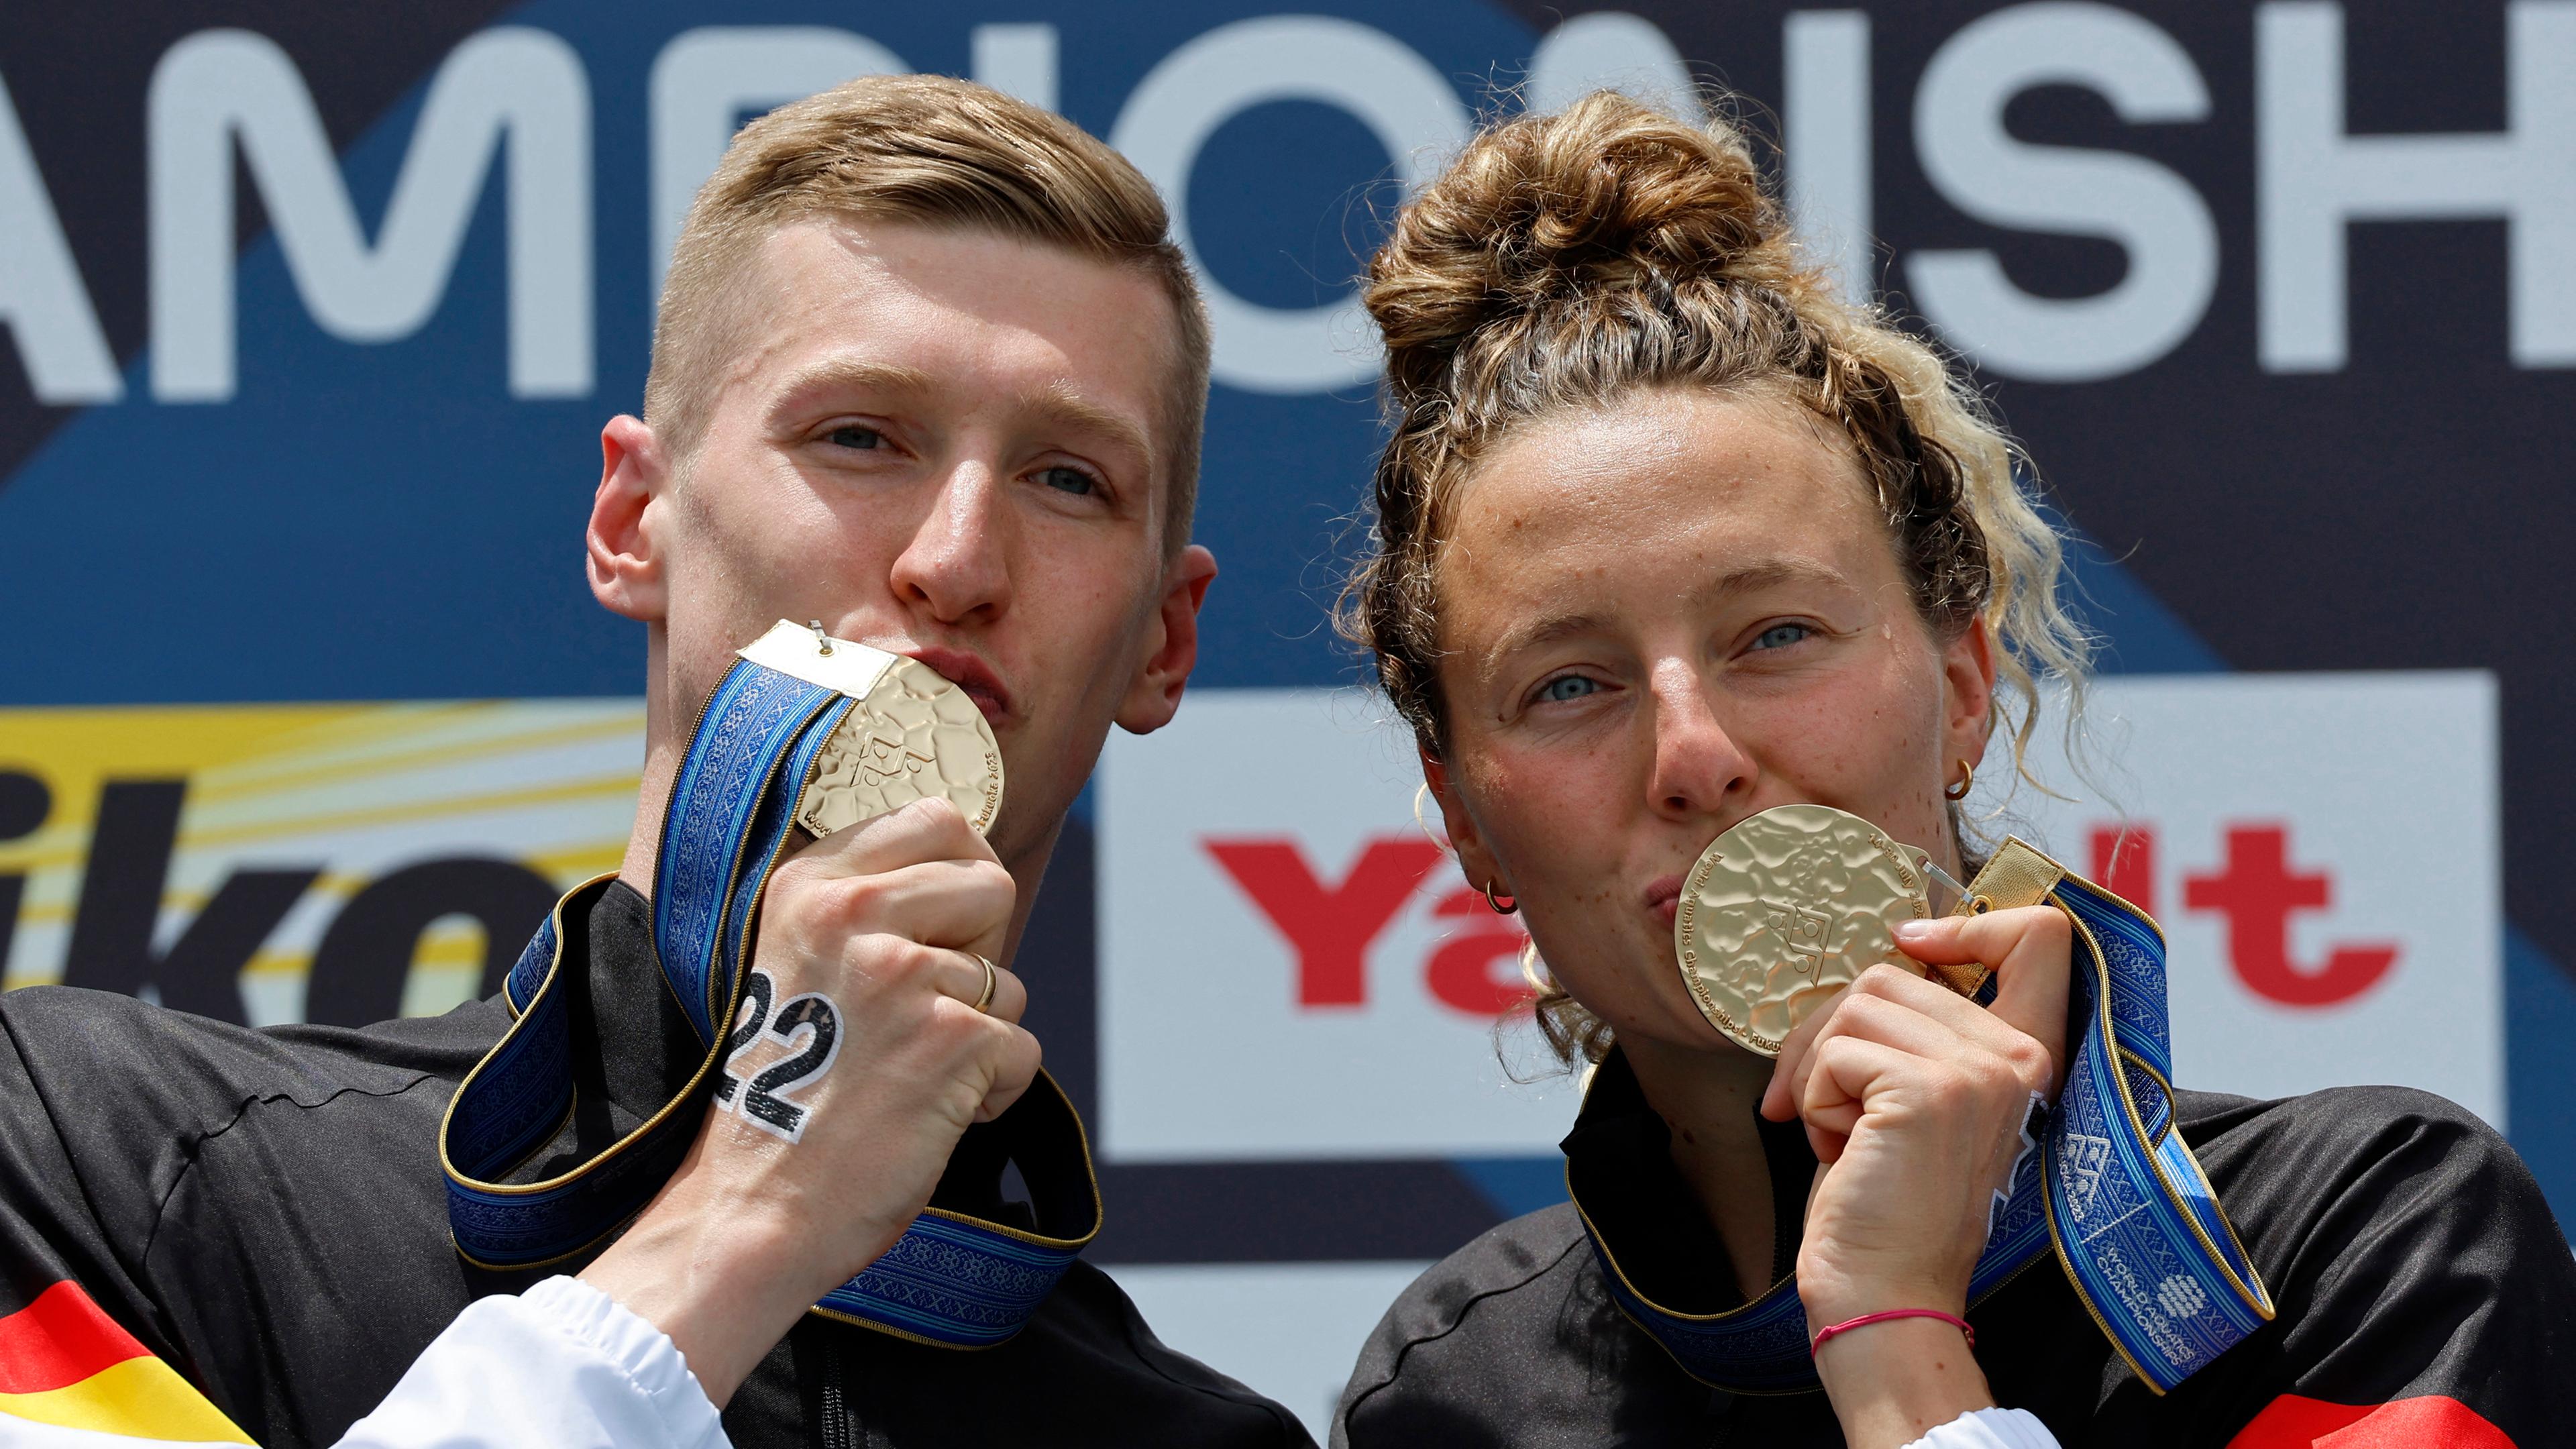 Freiwasserschwimmer Leonie Beck und Florian Wellbrock mit ihren Goldmedaillen.